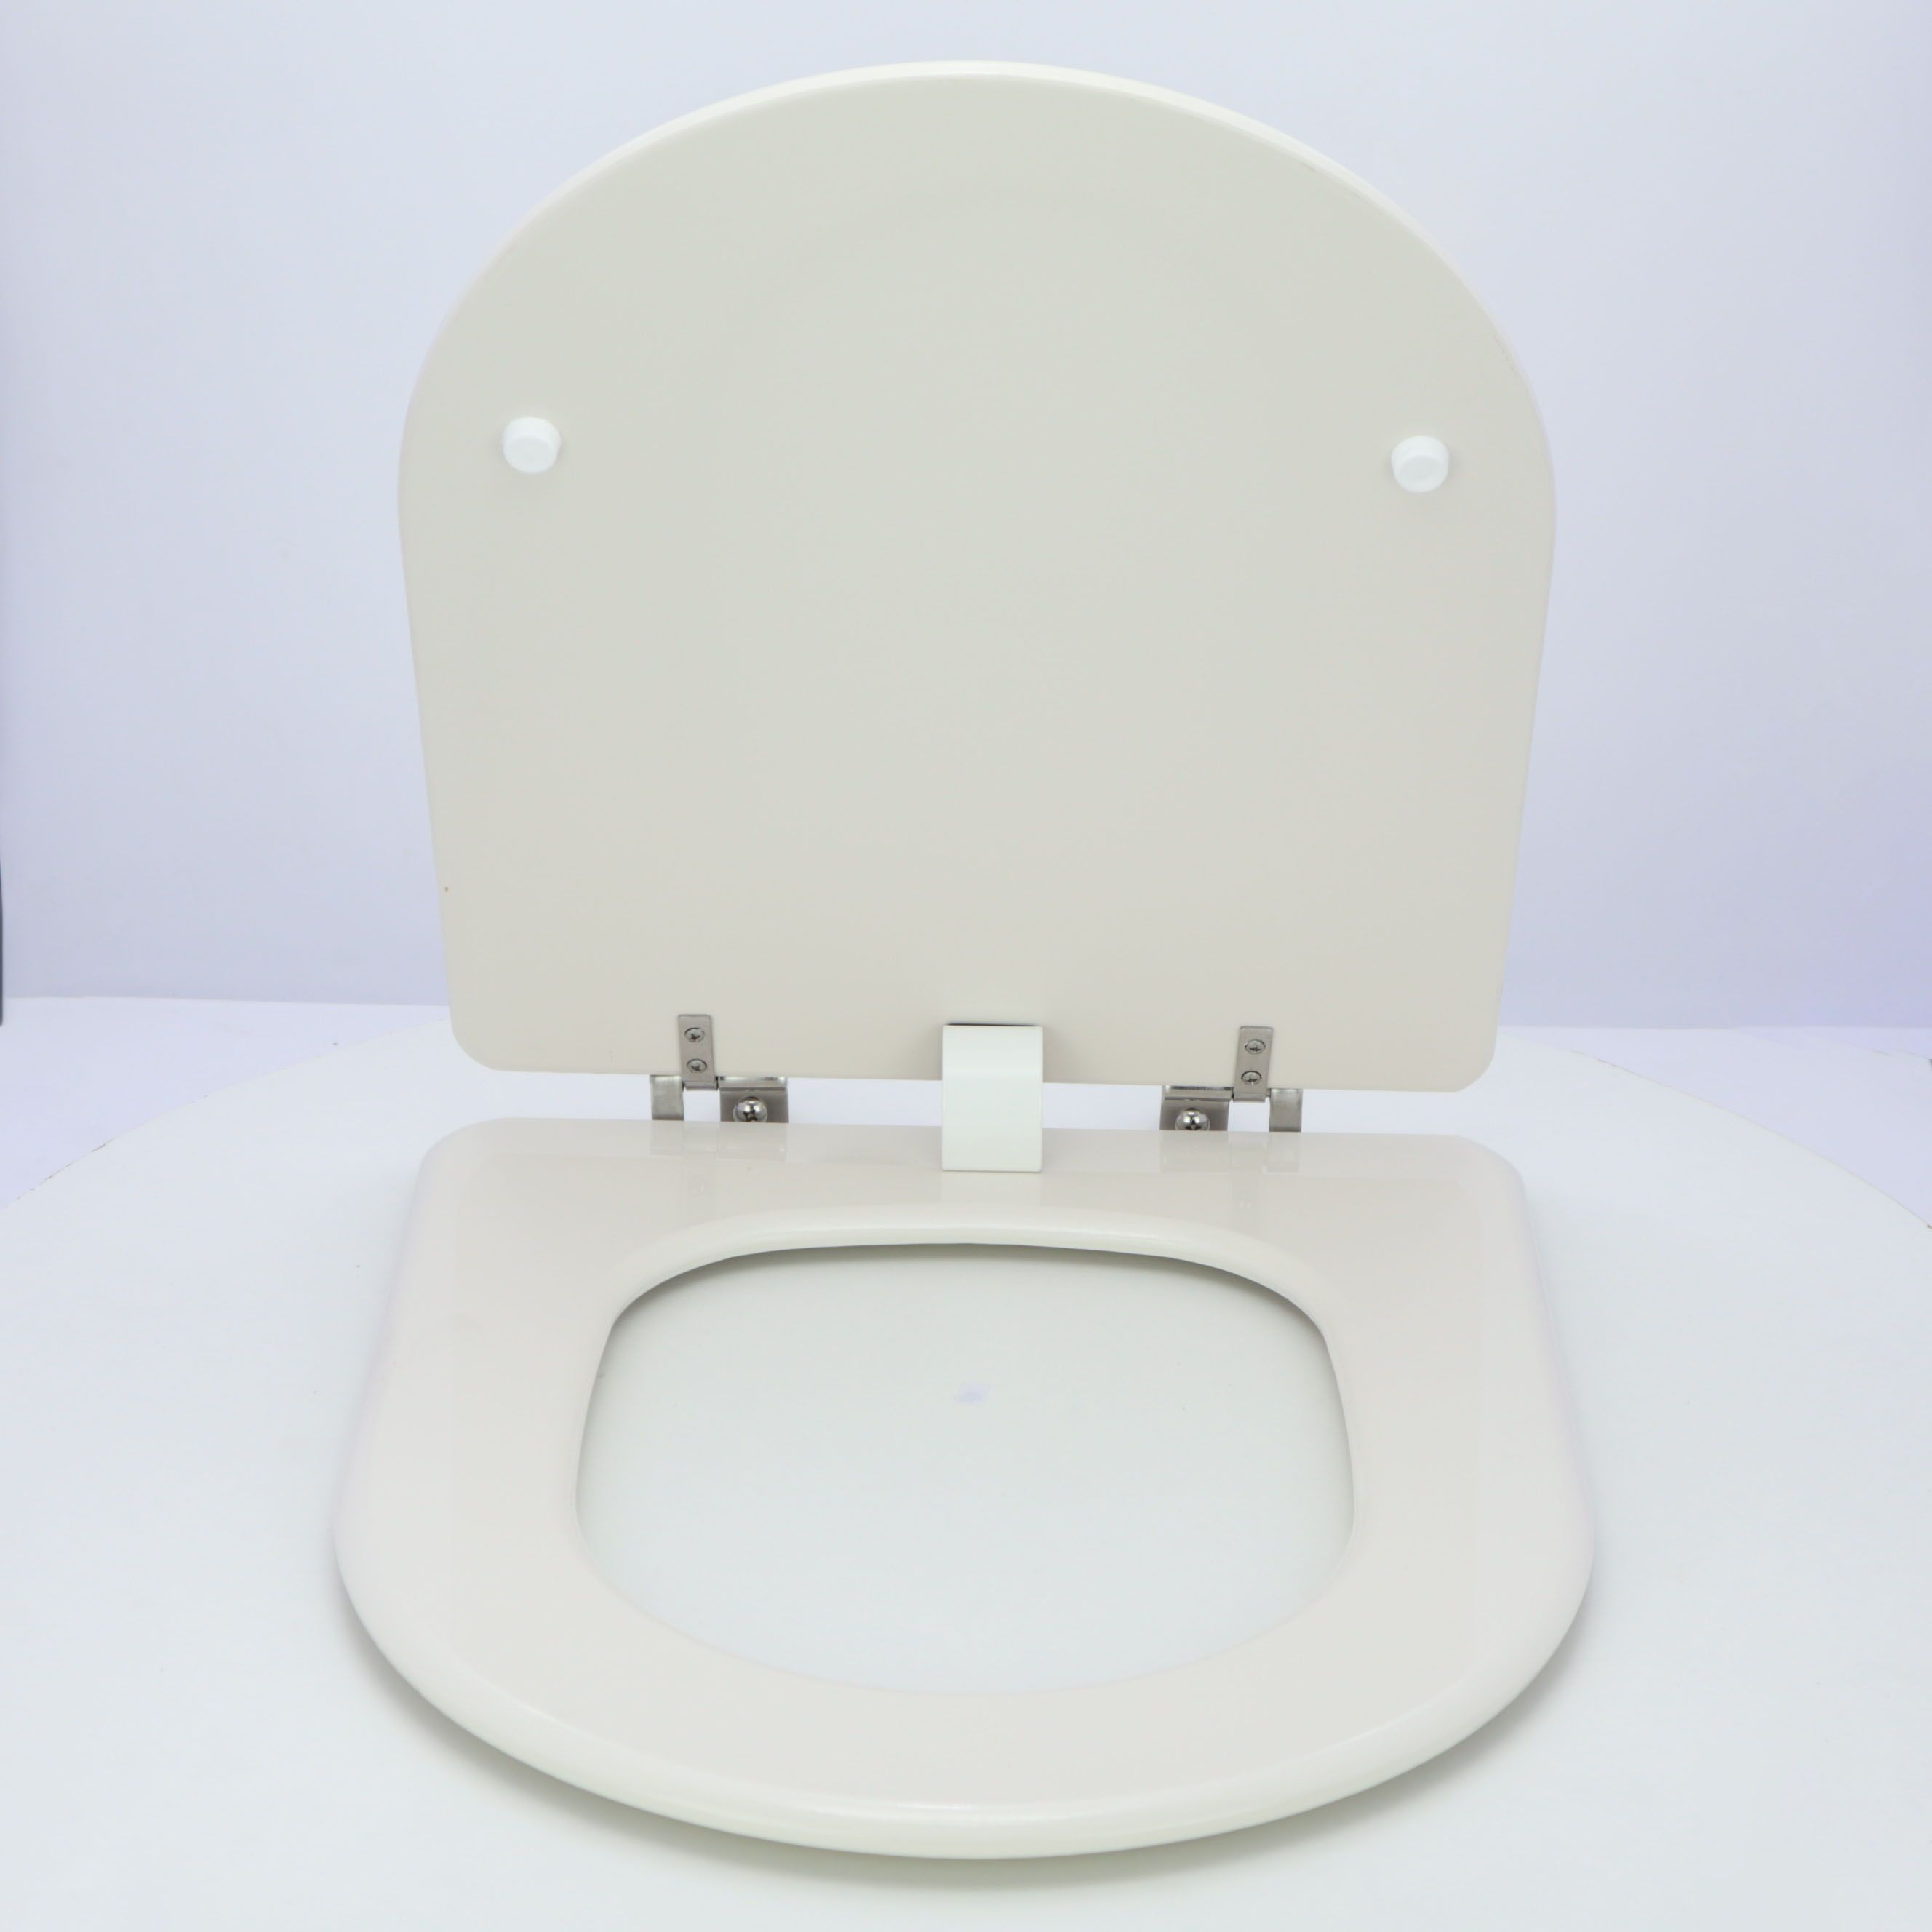 Asiento tapa wc adaptable para el modelo Columbia de Roca.